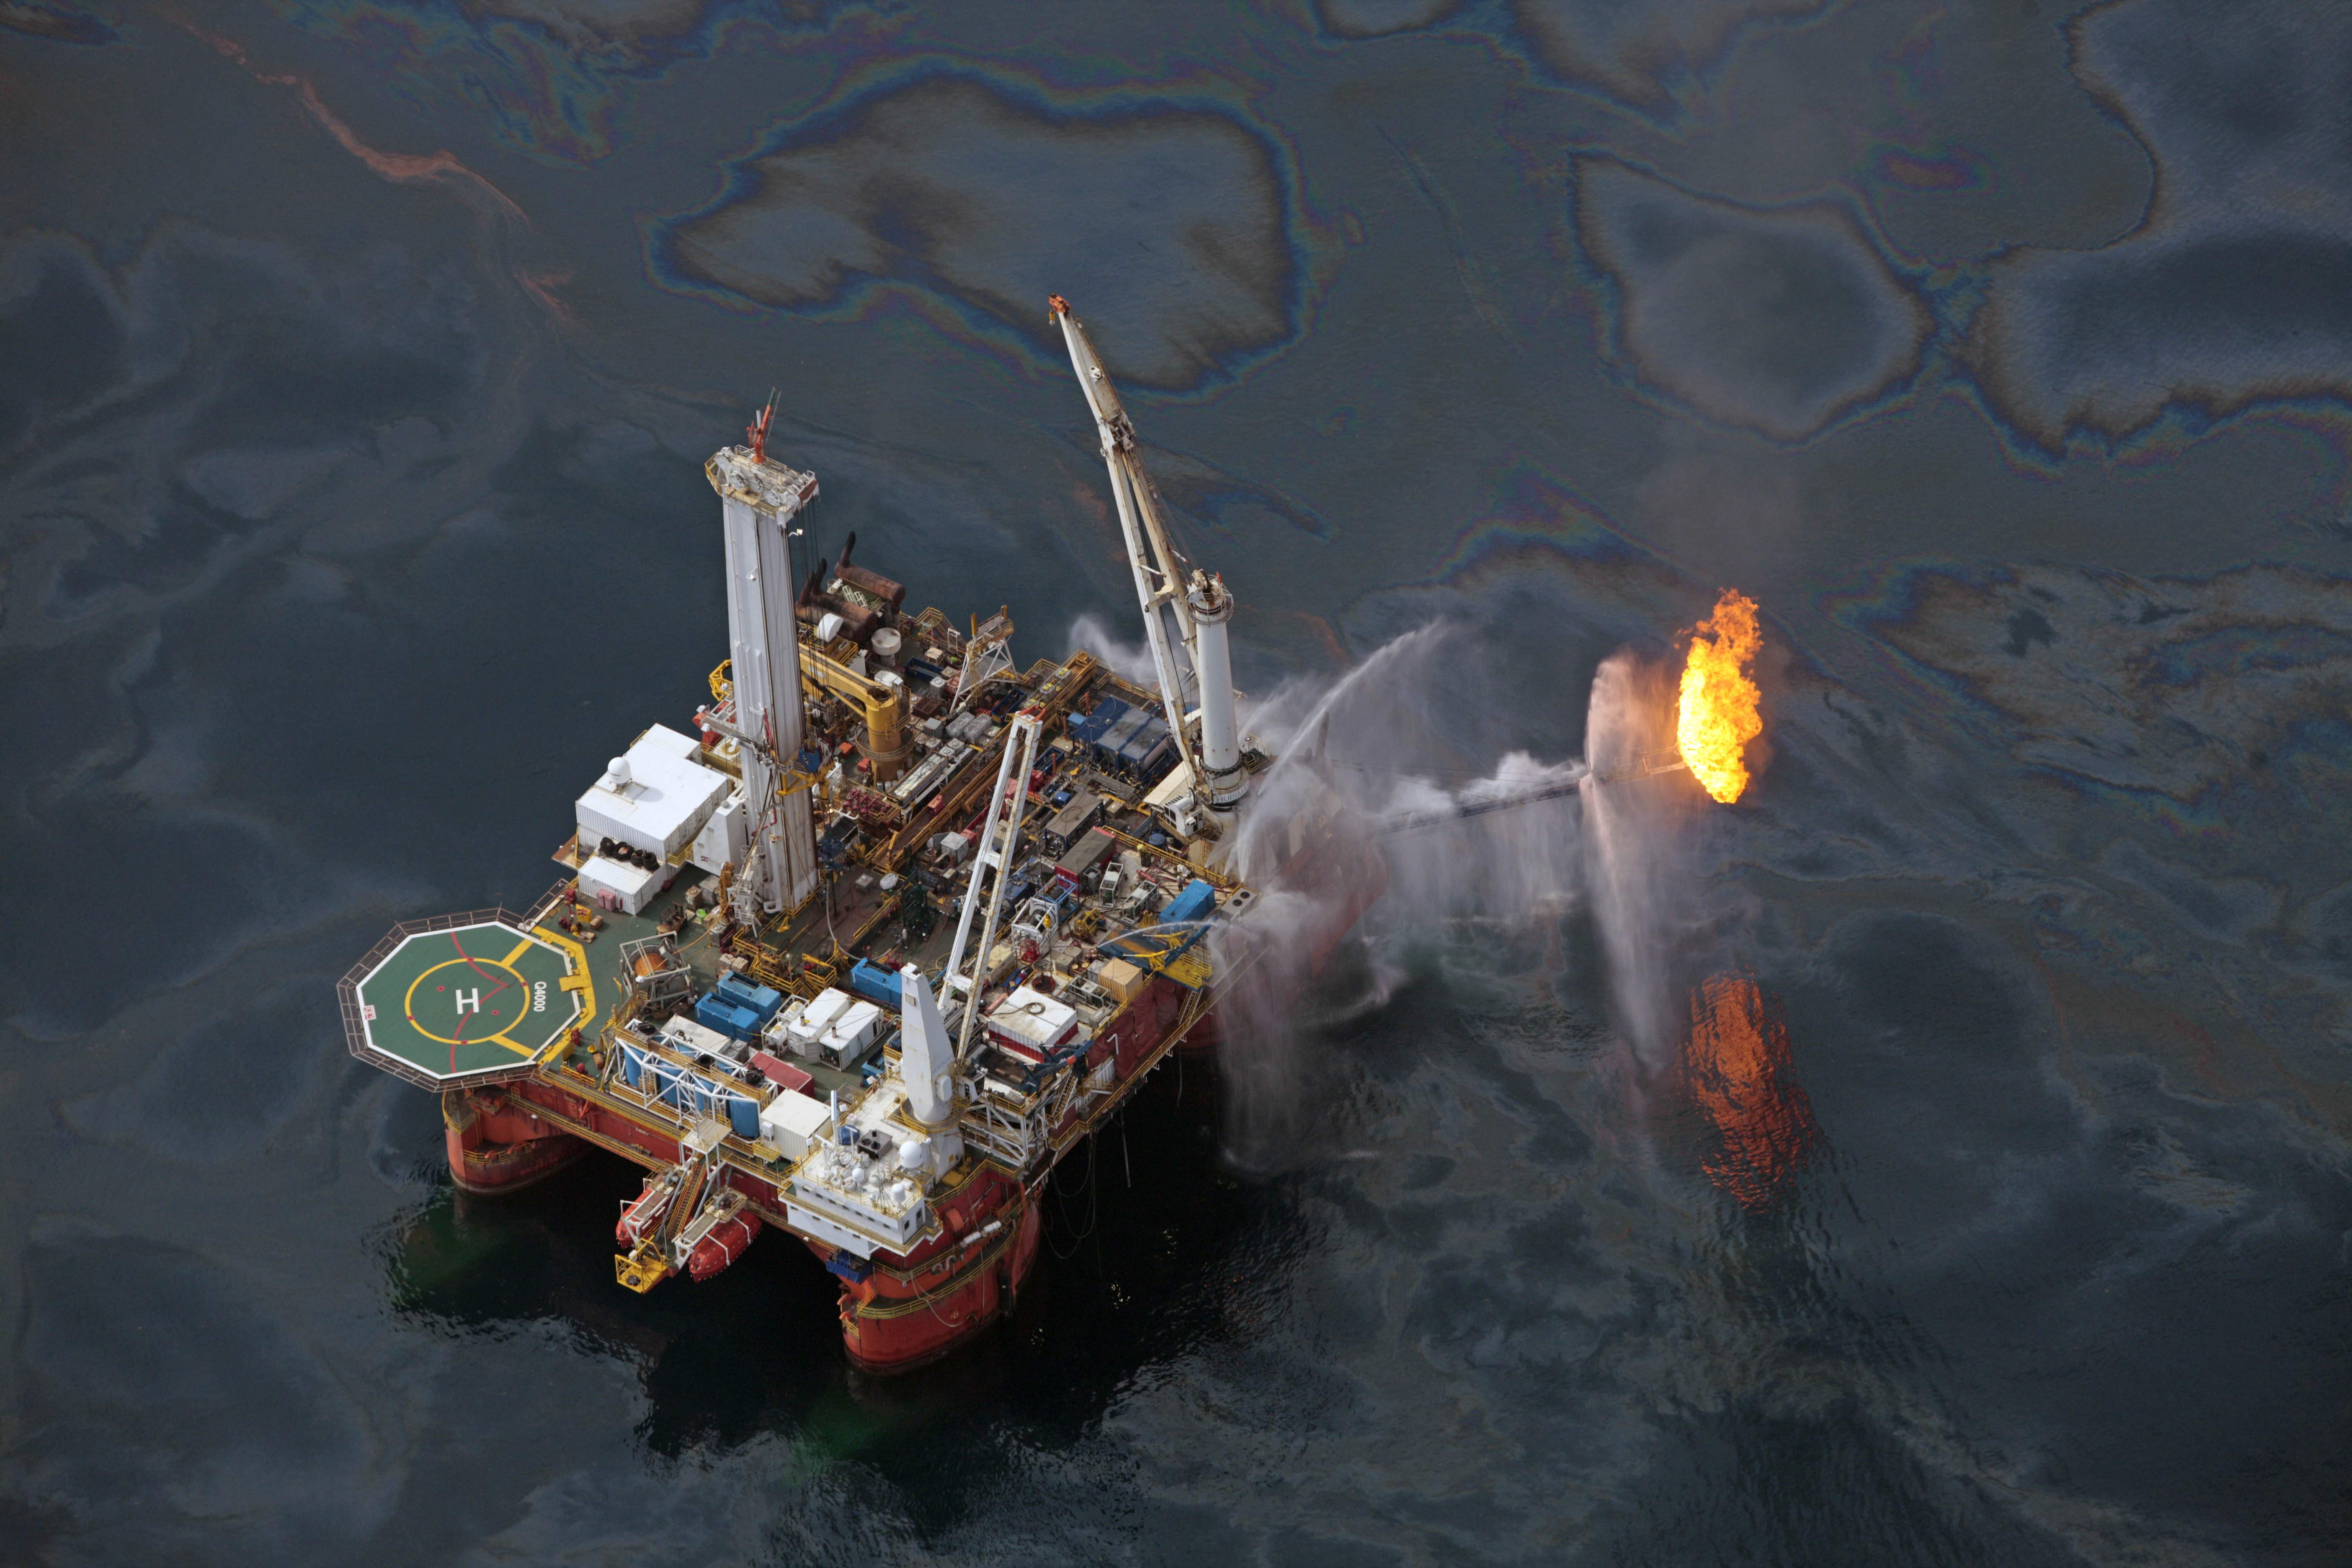 20/4/2010. BP:s oljeplattform Deepwater Horizon i Mexikanska golfen exploderar och orsakar en av de största naturkatastroferna i modern tid. 